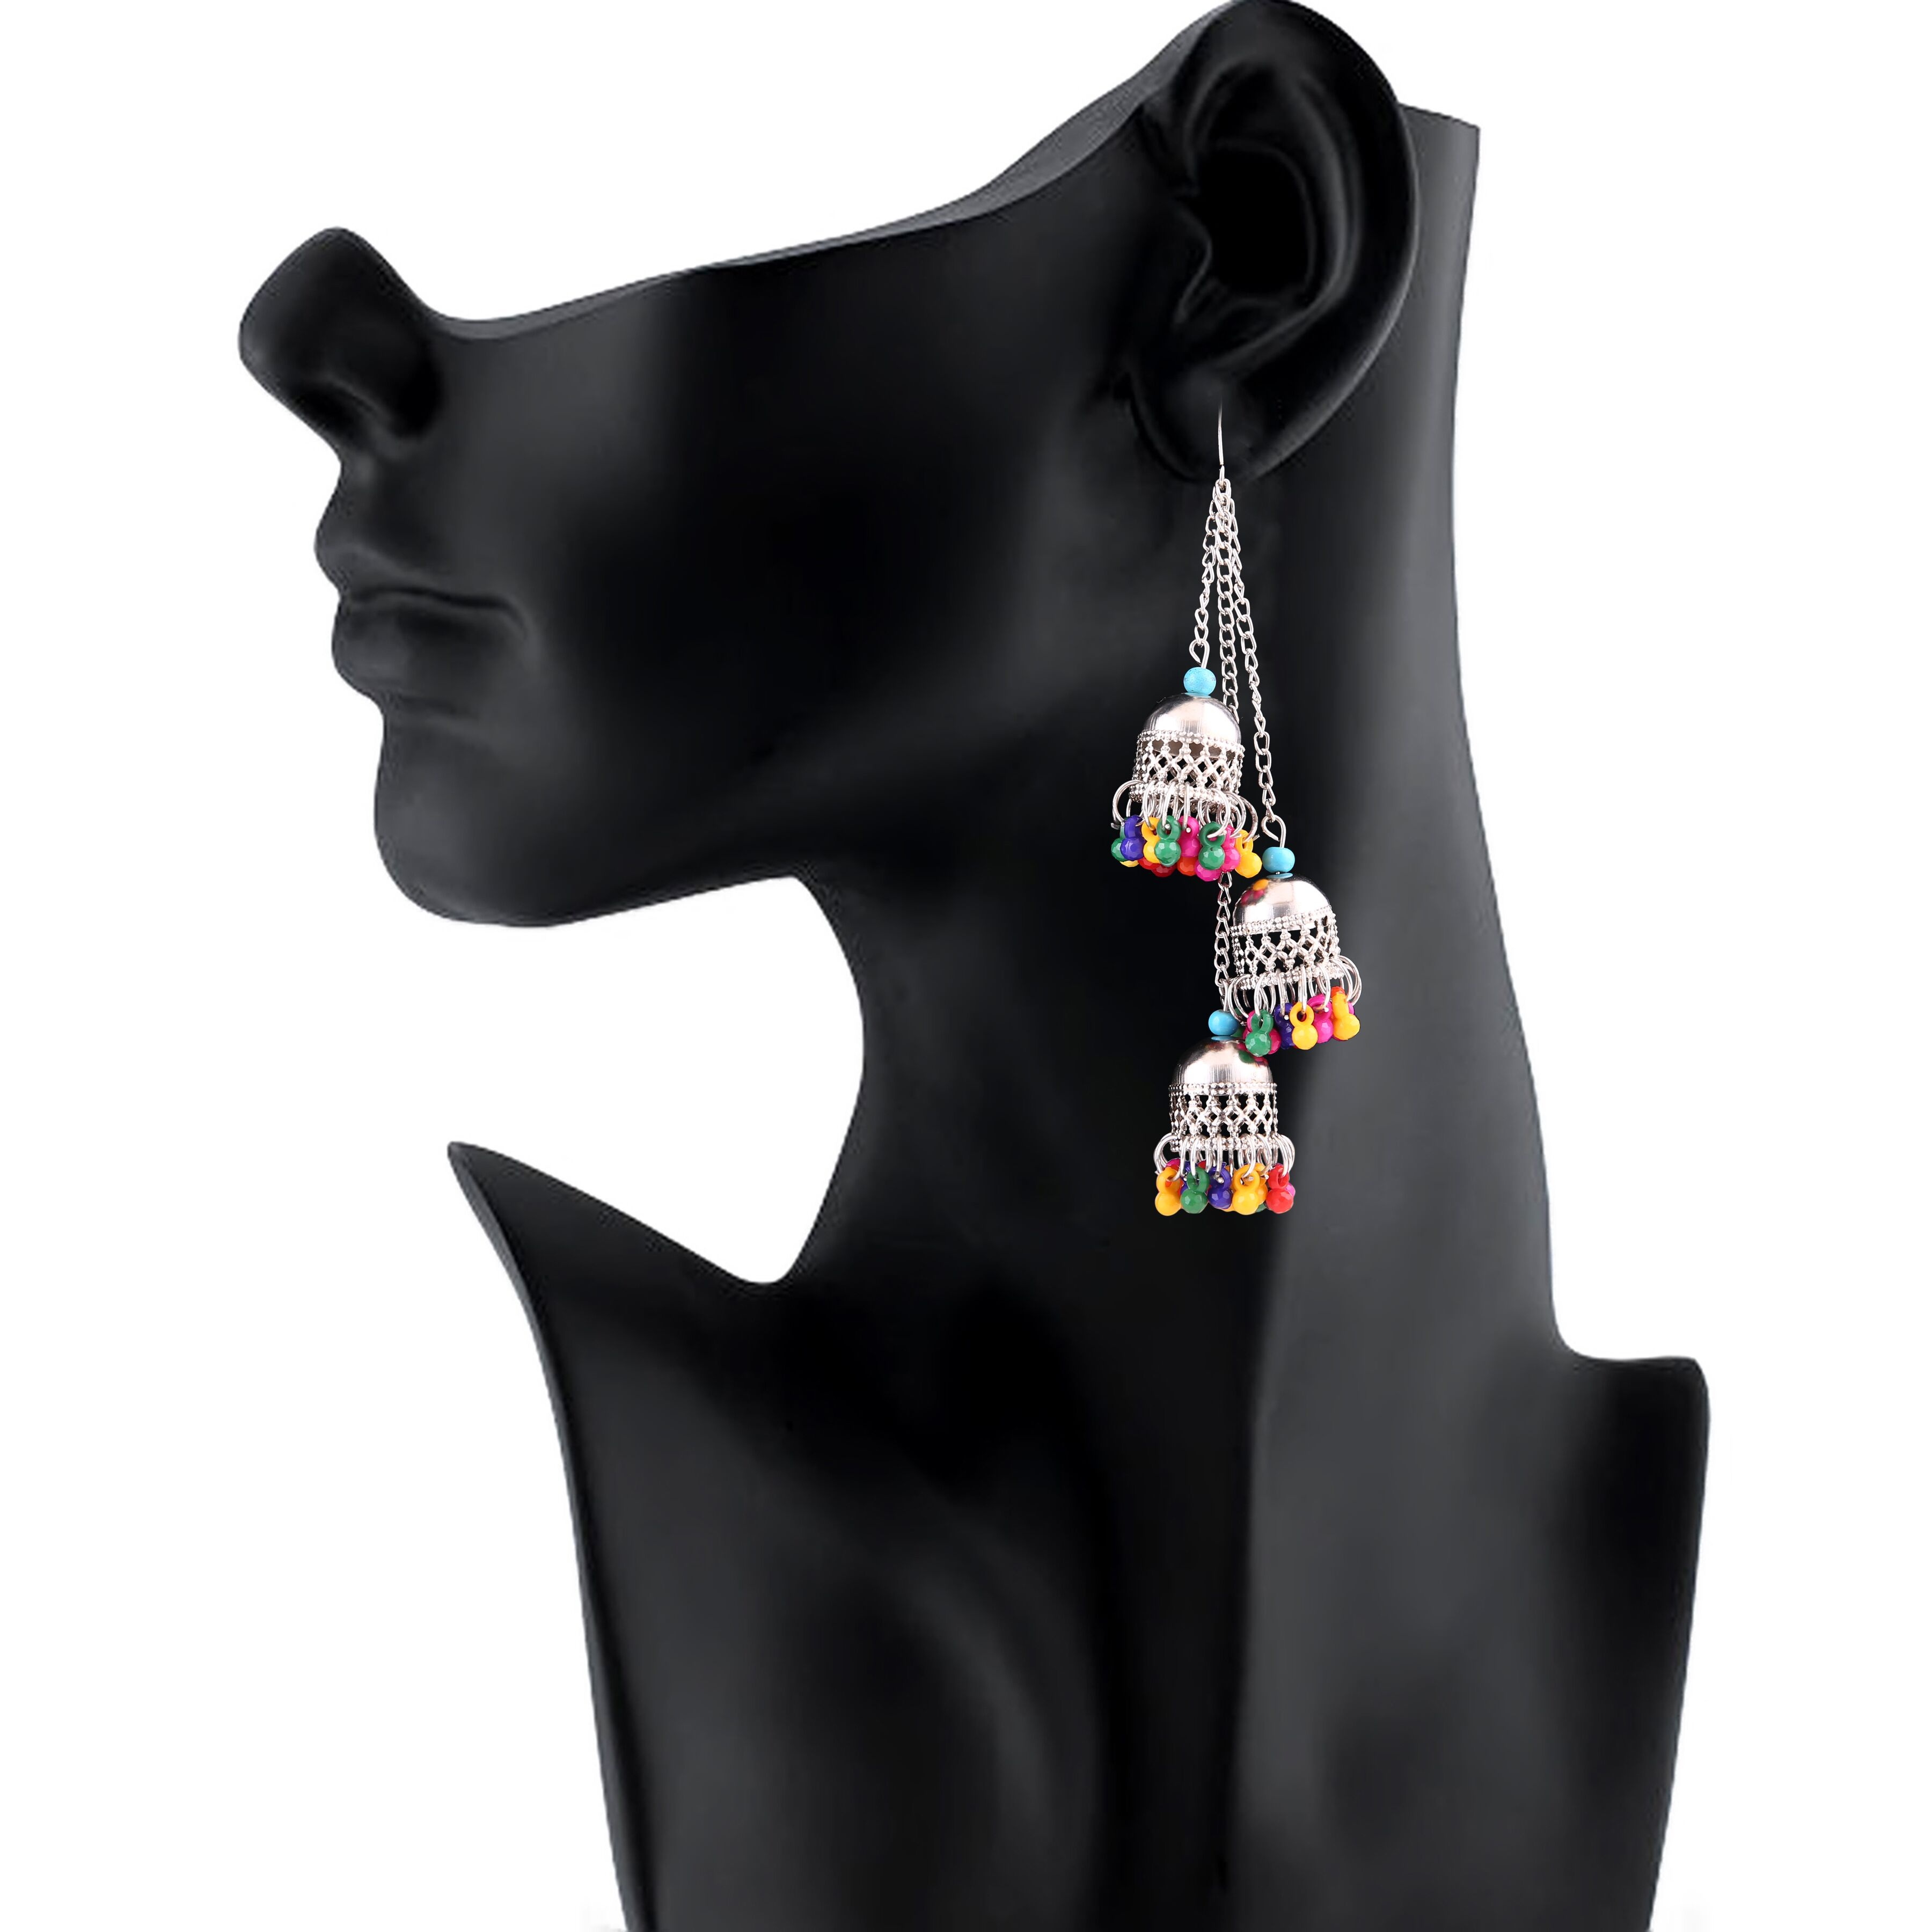 Generic Women's Silver Oxidized Hook Dangler Hanging Earrings-Multicolour